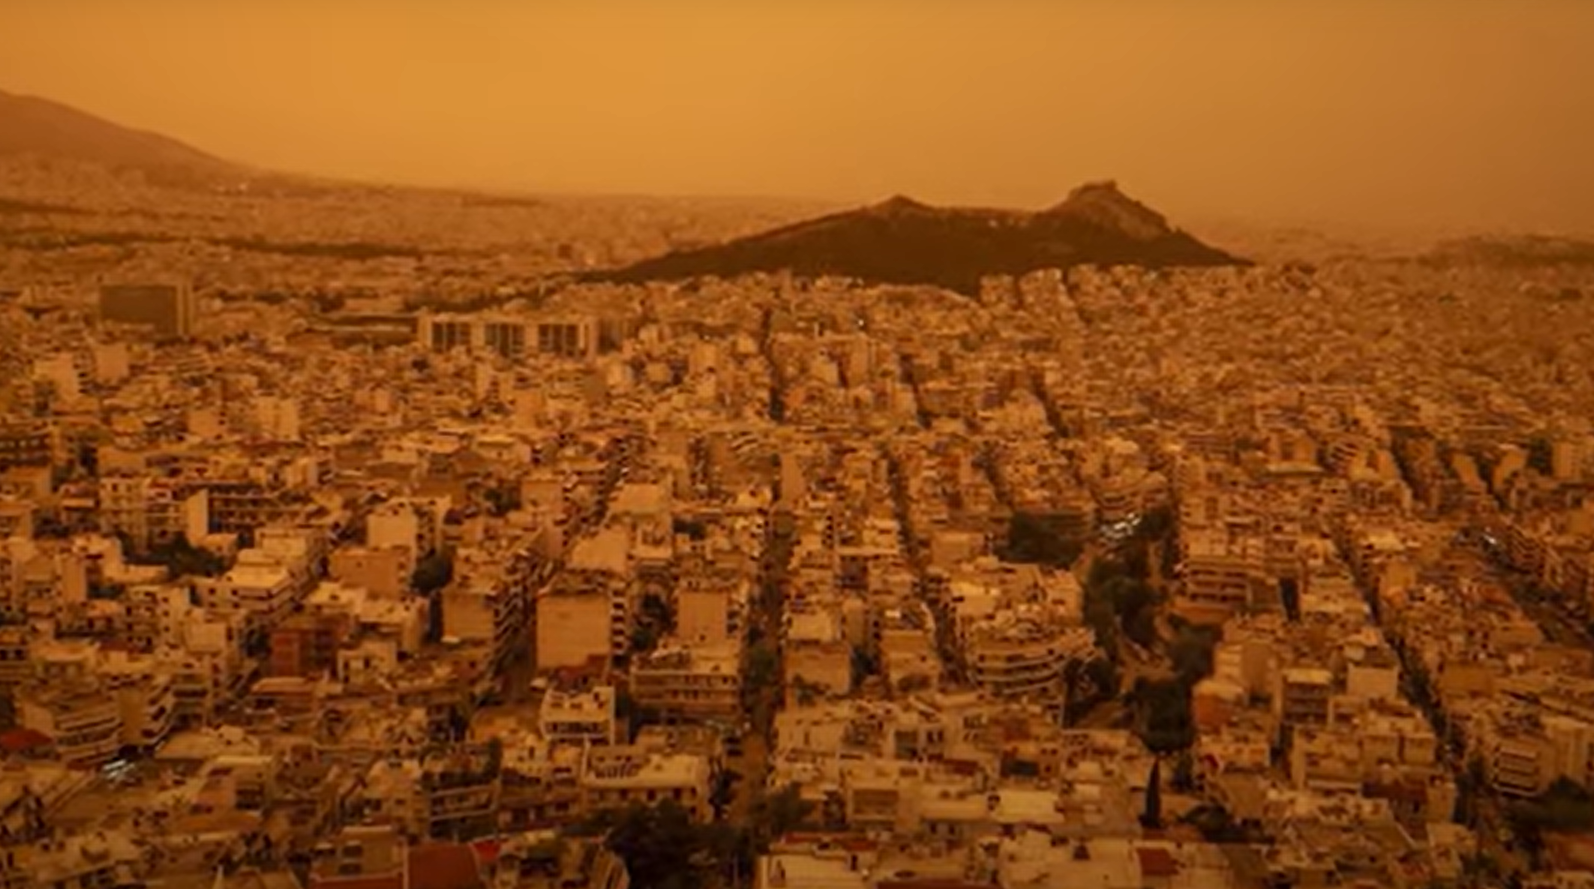 Céu laranja em Atenas. Foto: Reprodução/ Redes sociais